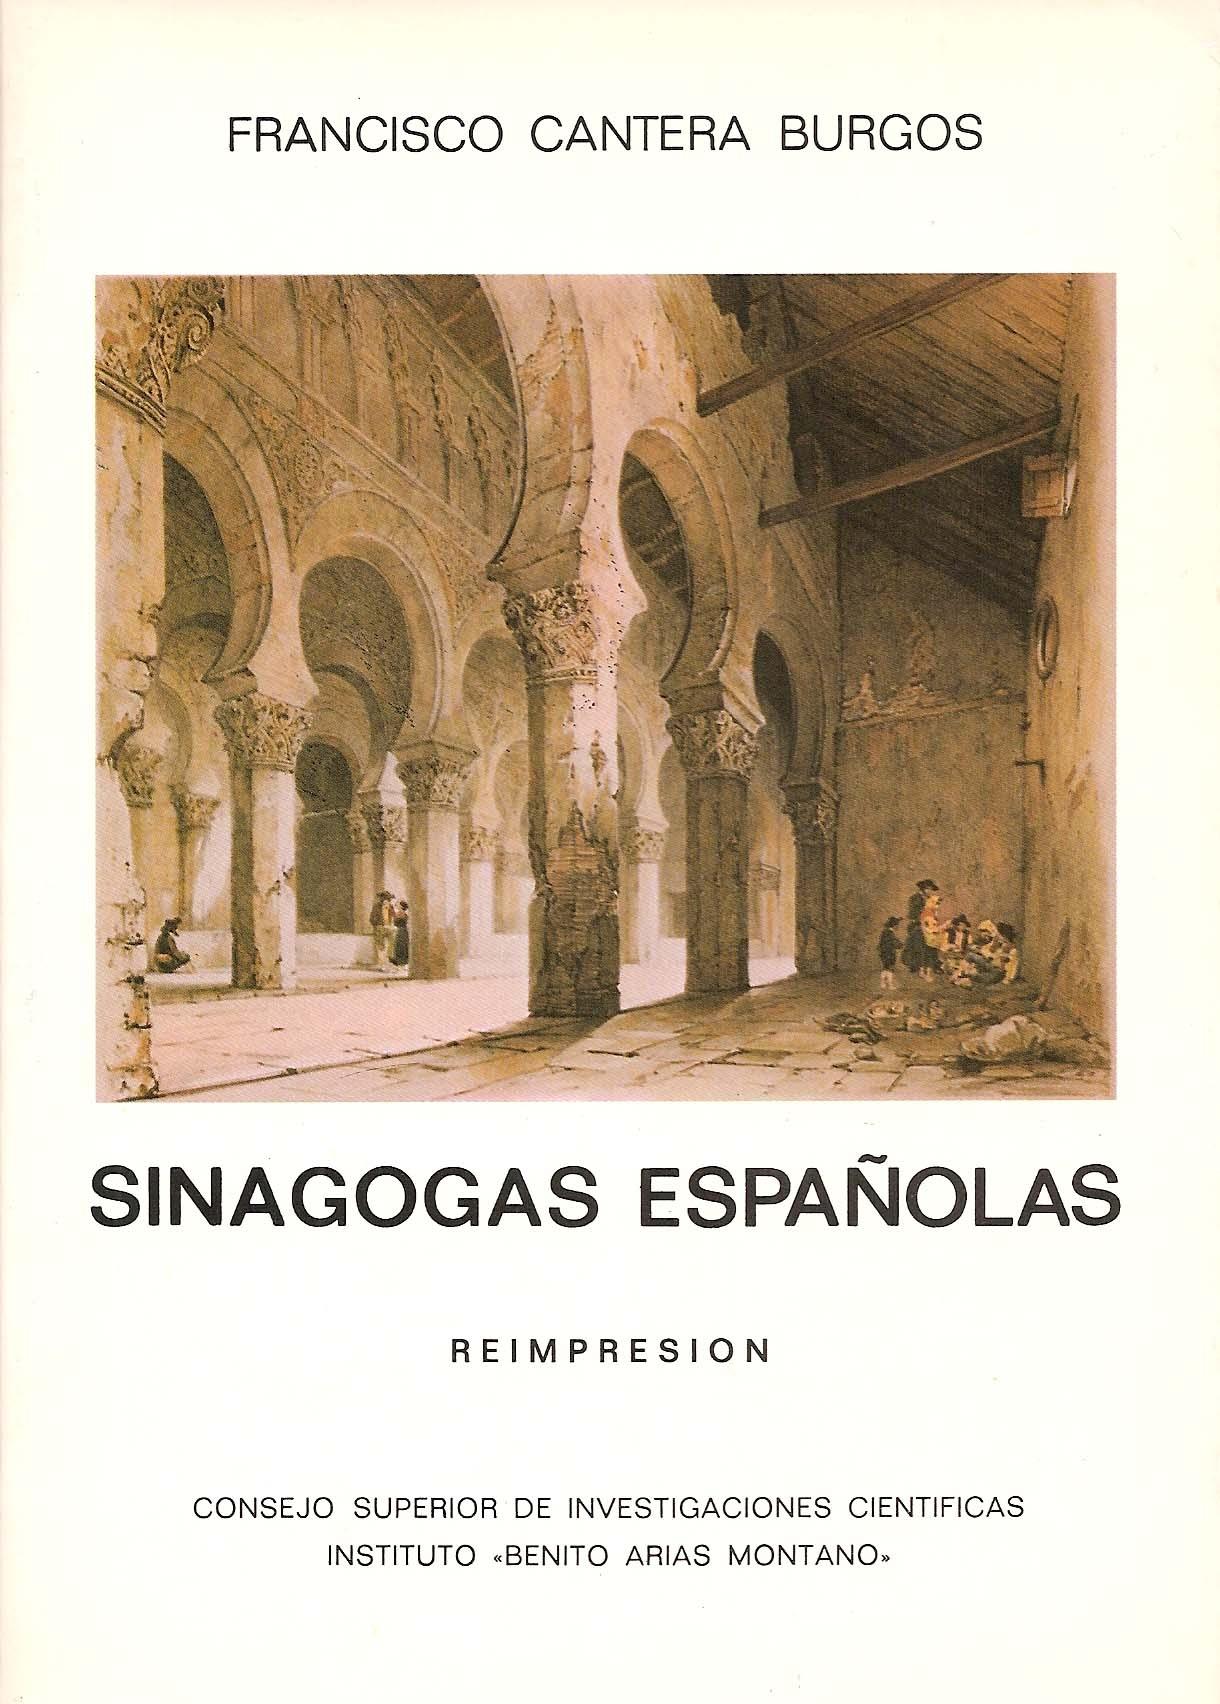 Sinagogas españolas "Con especial estudio de la de Córdoba y la toledana de El Tránsito". 